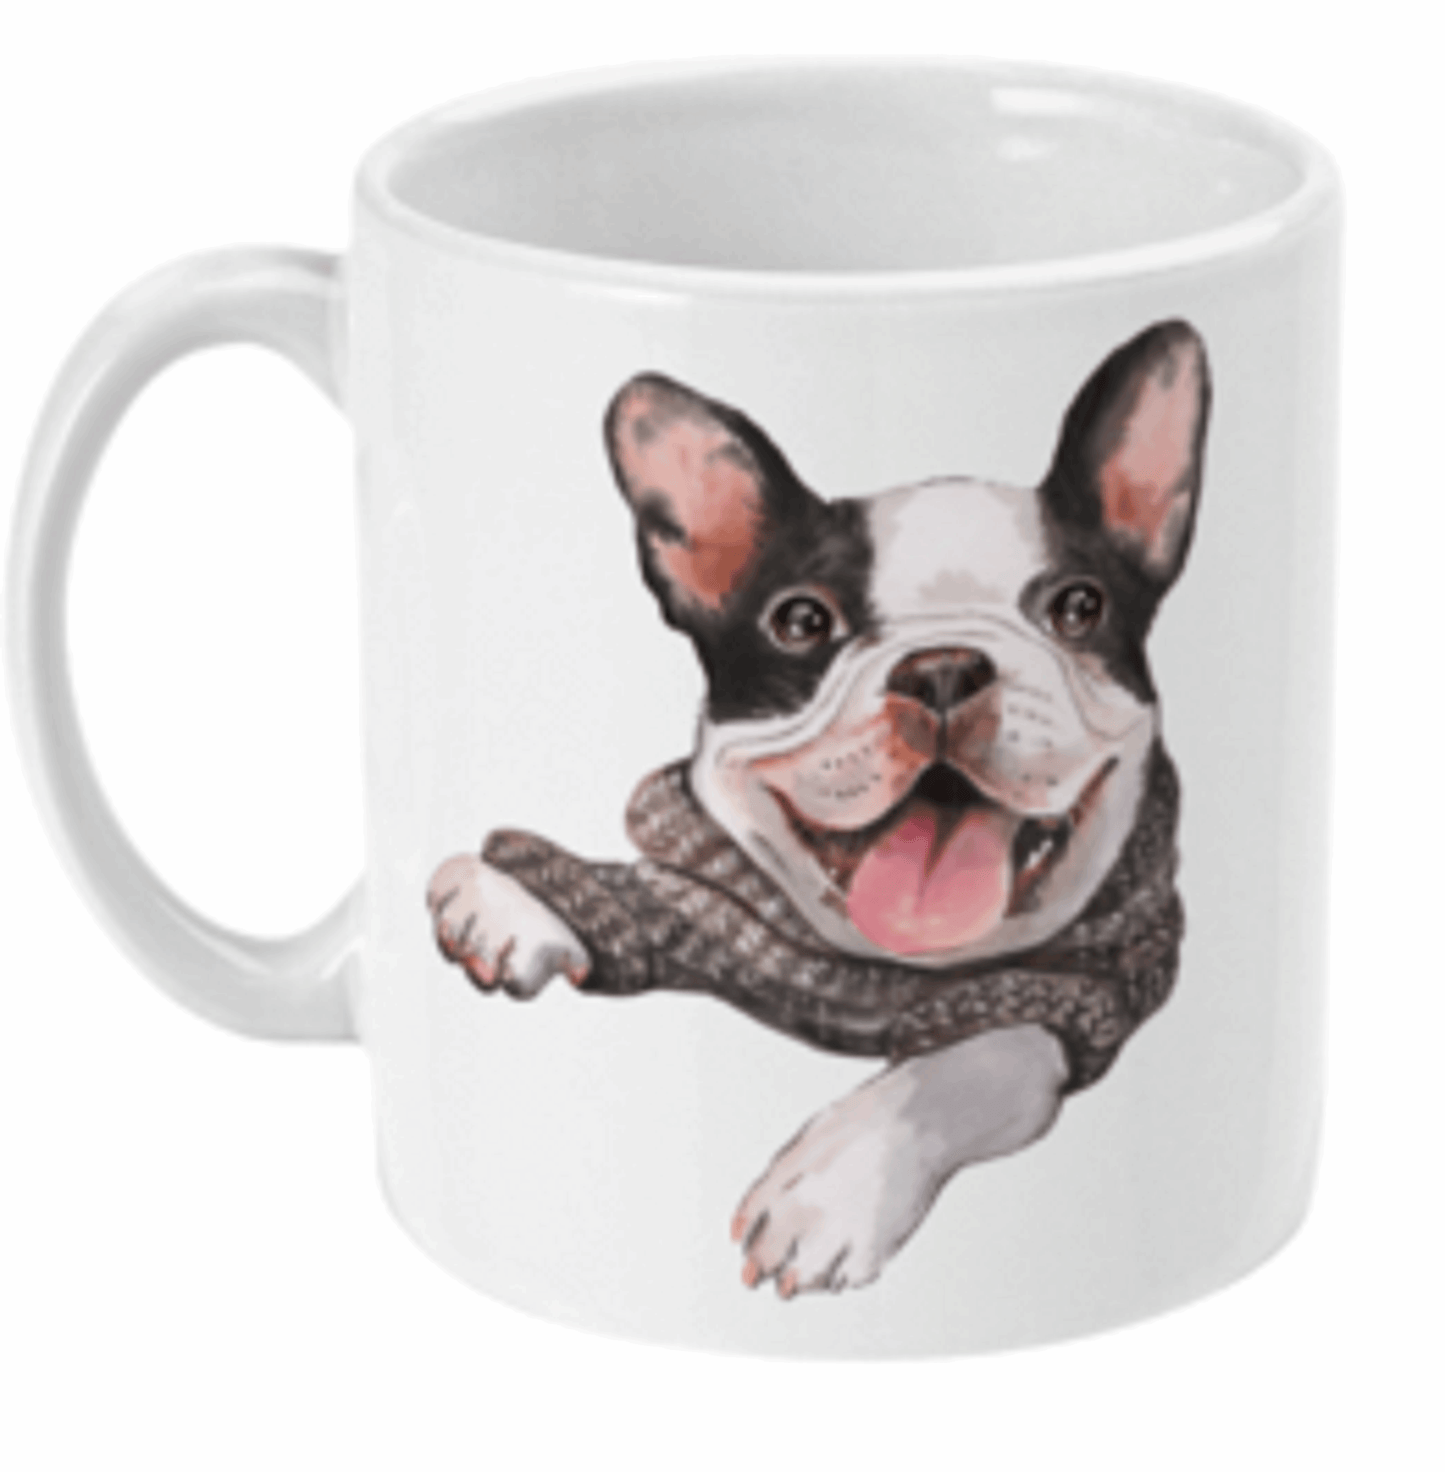  French Bulldog in Jumper Coffee Mug by Free Spirit Accessories sold by Free Spirit Accessories